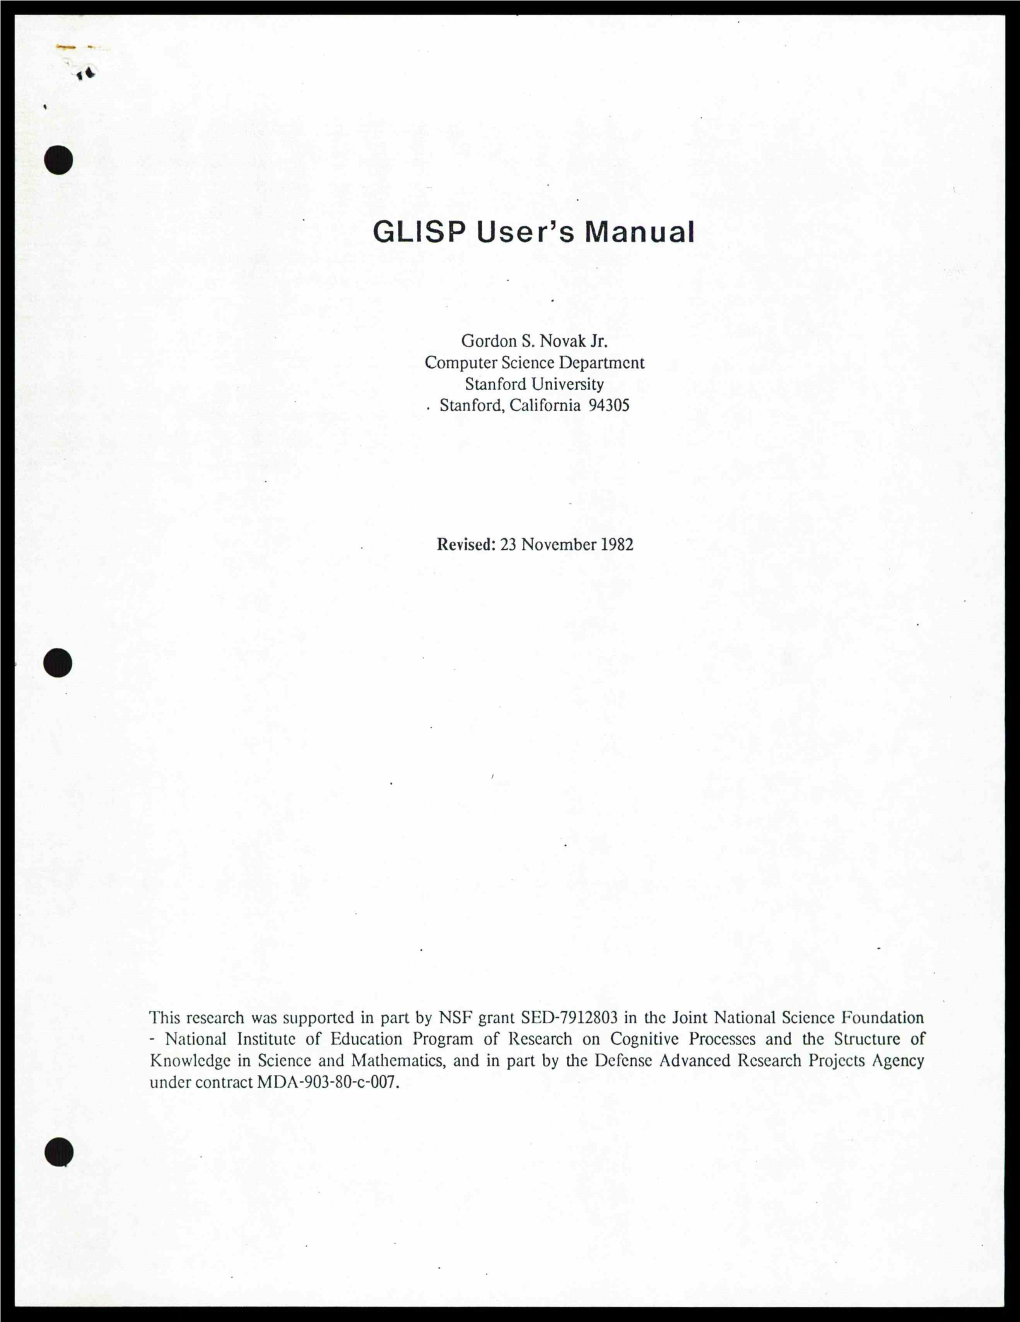 GLISP User's Manual